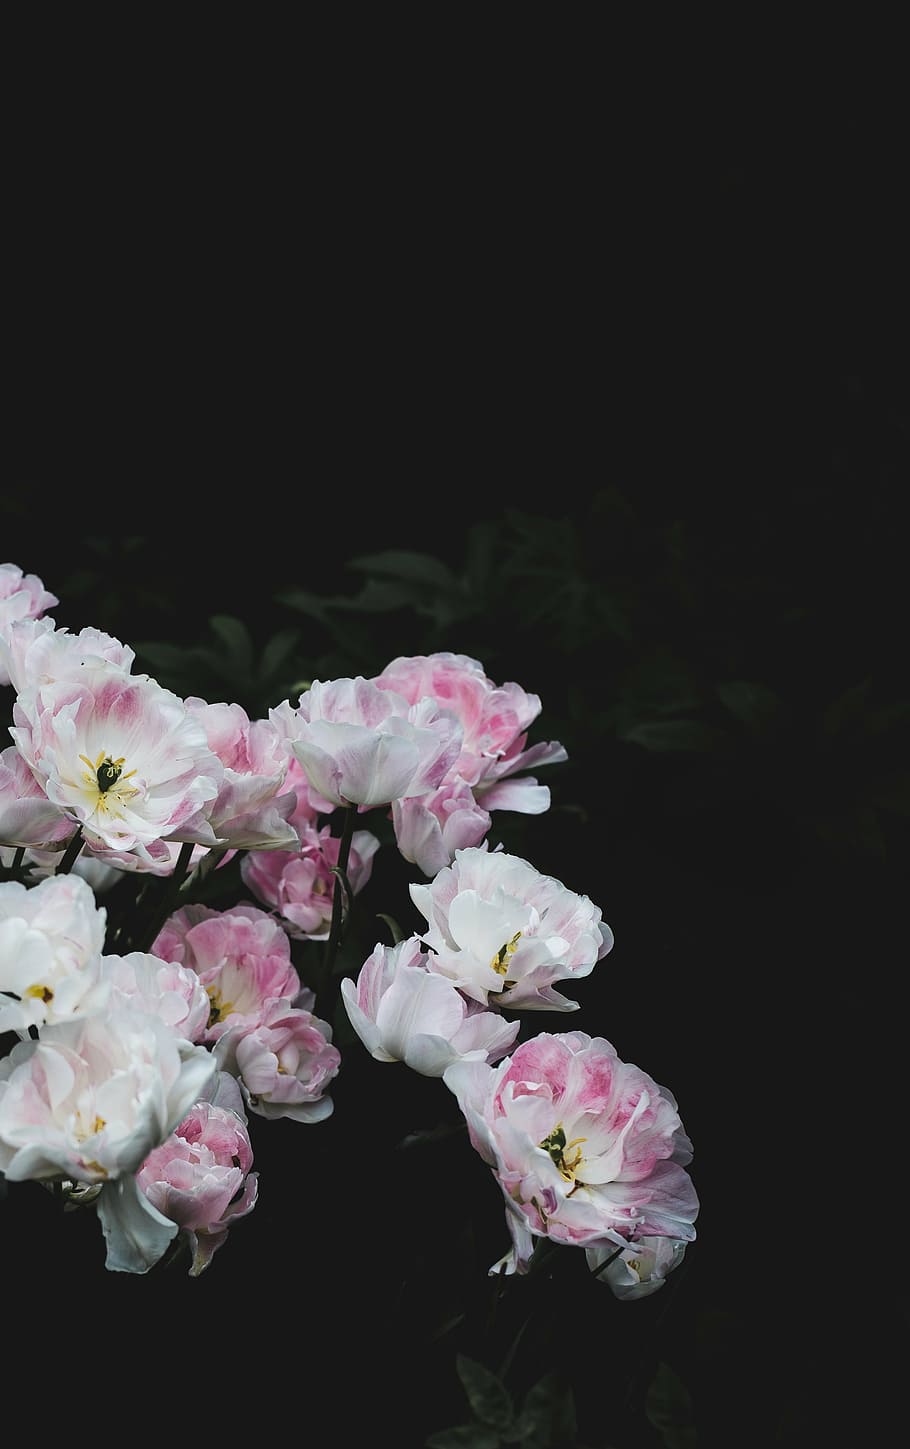 putih, merah muda, bunga petaled, gelap, malam, tanaman, bunga, kelopak, alam, Warna pink